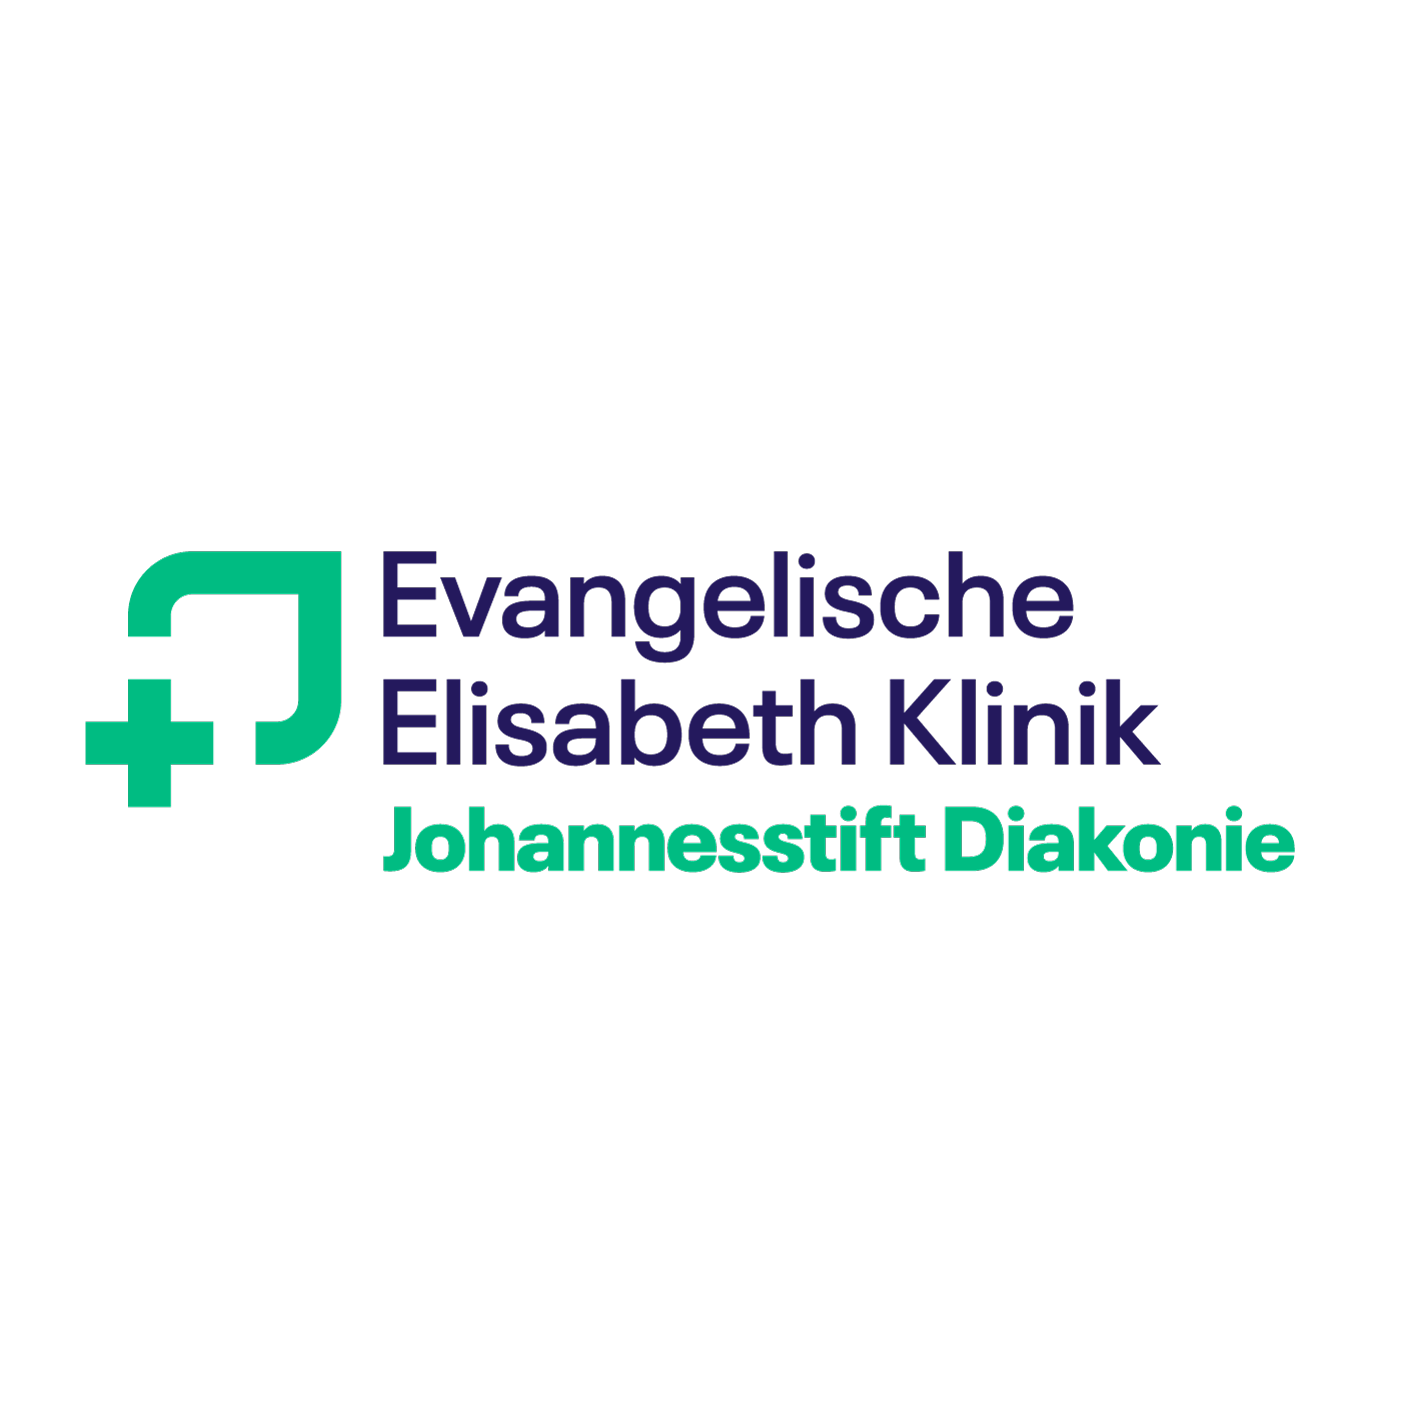 Evangelische Elisabeth Klinik
- Johannisstift Diakonie